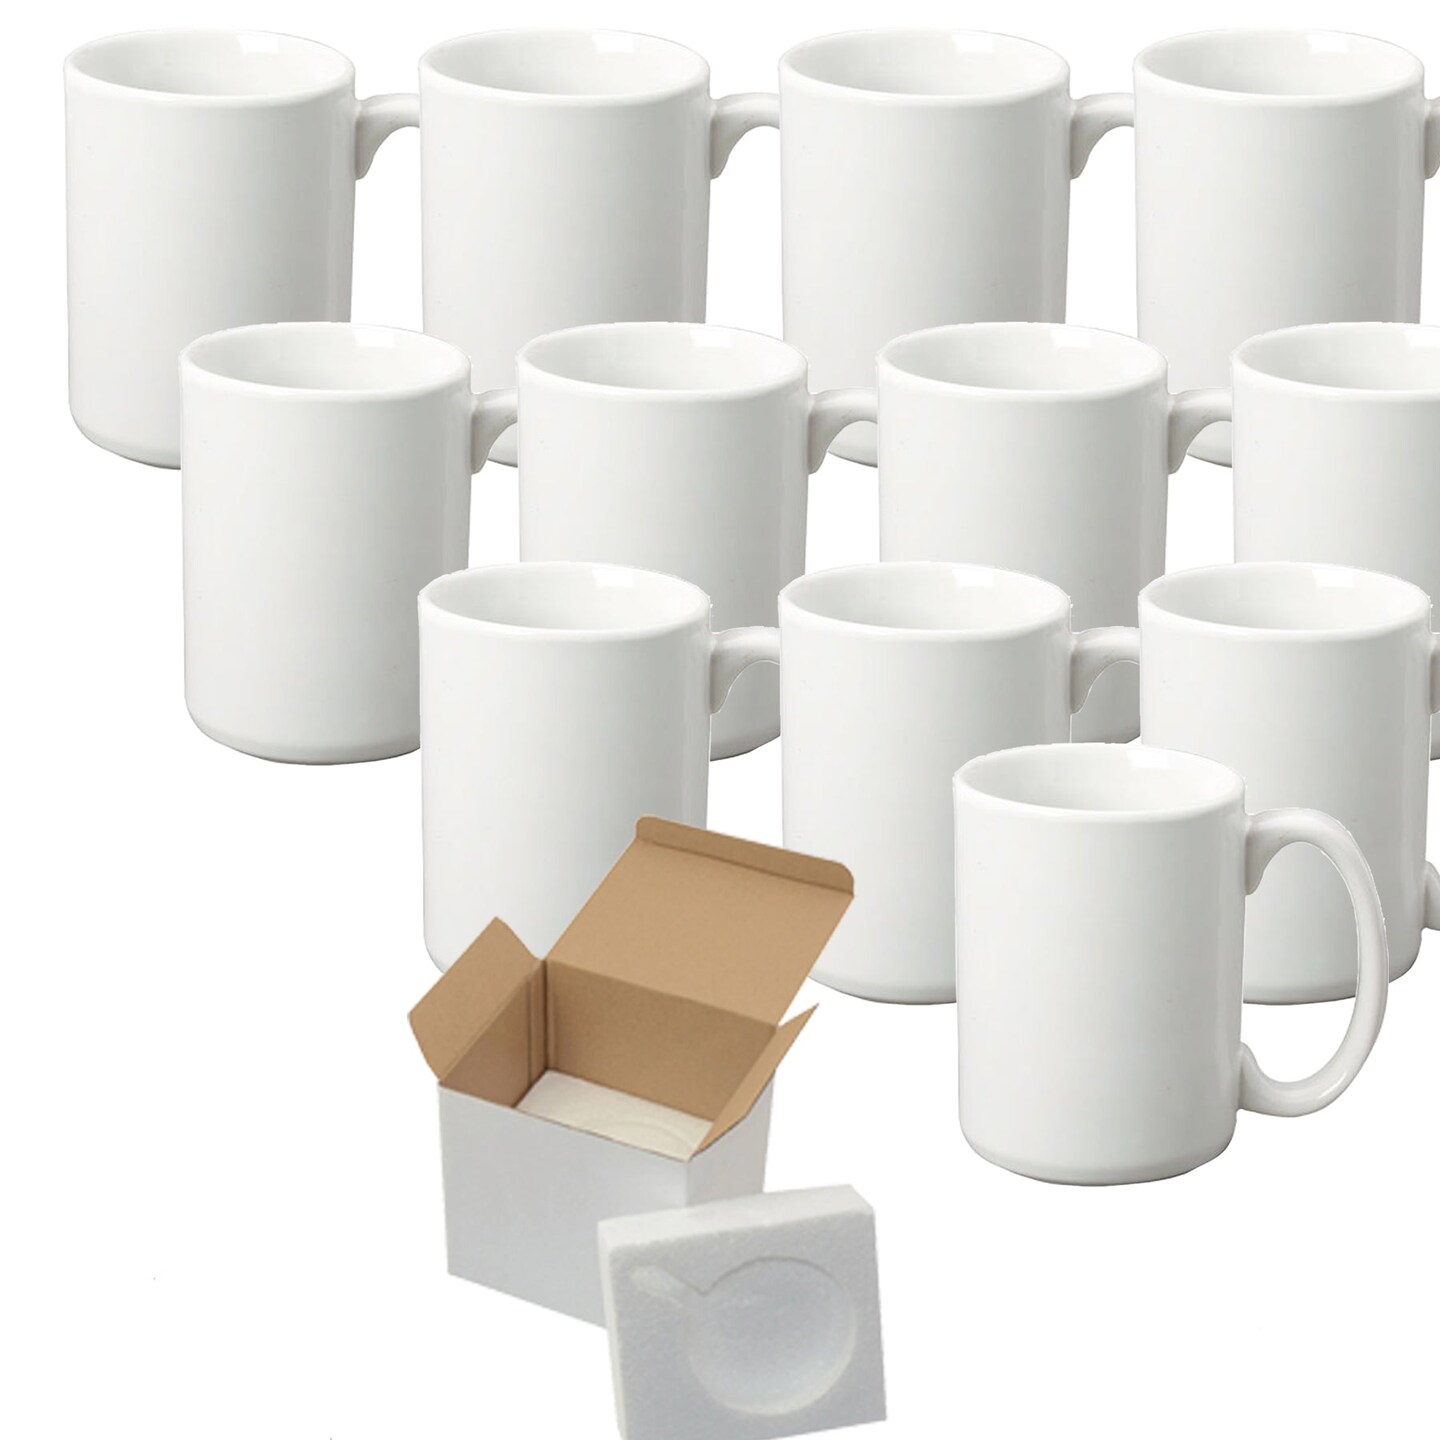 Mugsie | Case of 12 15oz Sublimation Mugs with Gift Mug Box. Mugs - Cardboard Box with Foam Supports